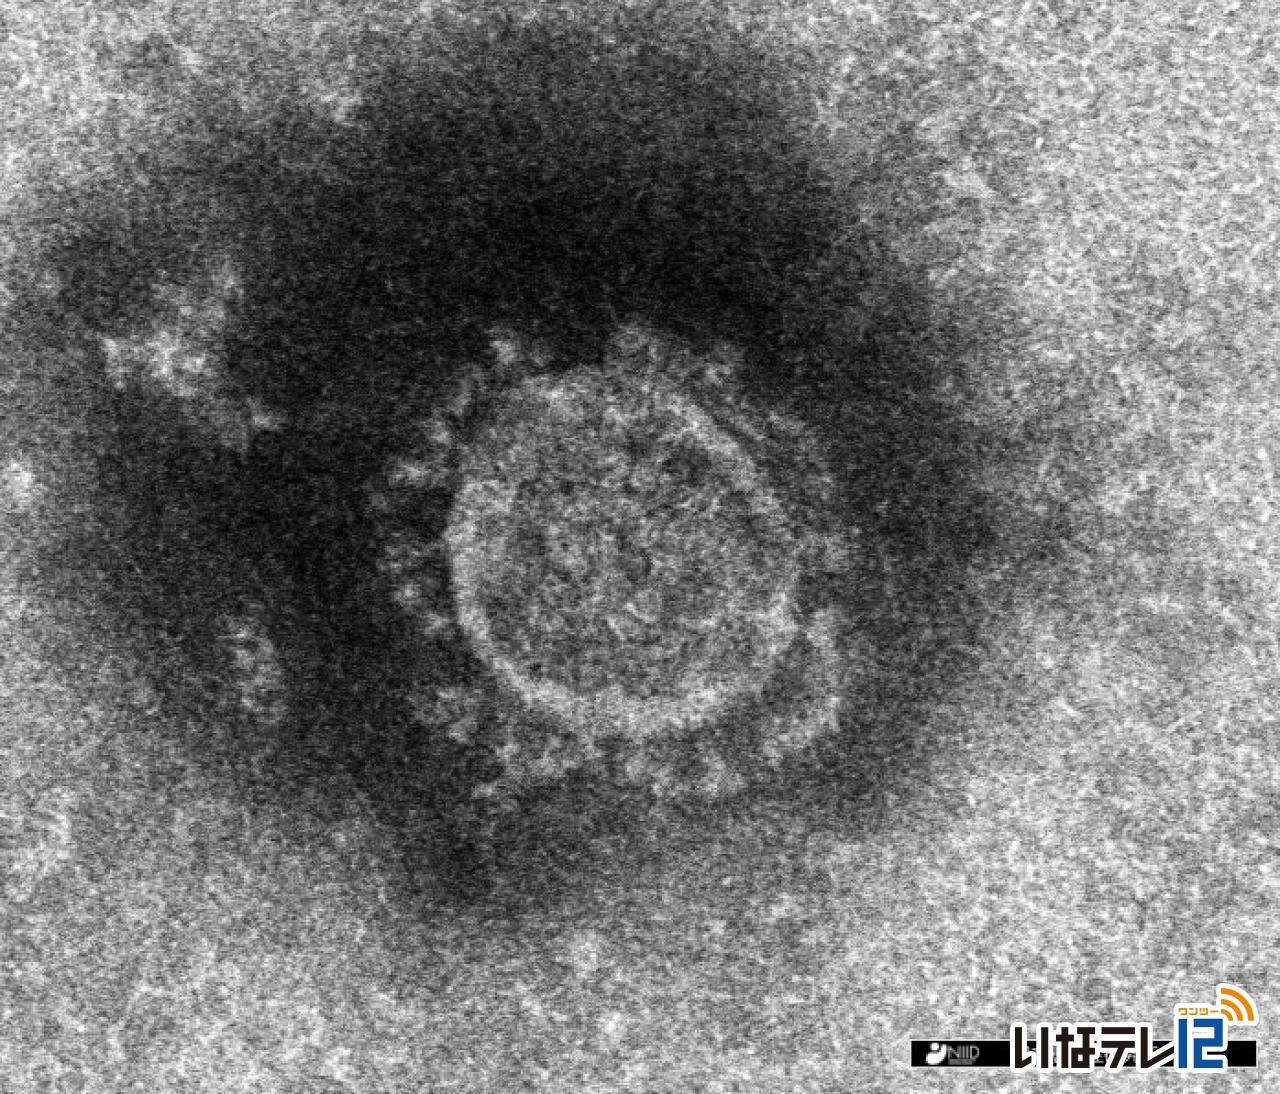 長野県内で新たに上伊那の４９人を含む５４８人の新型コロナウイルスへの感染確認